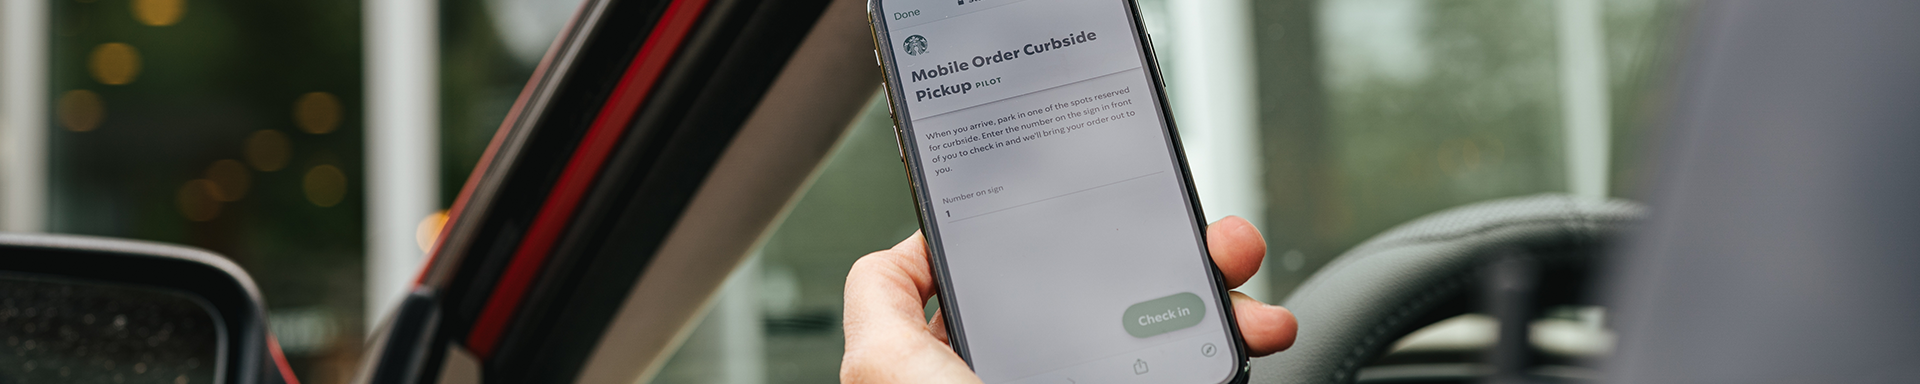 Starbucks Mobile order on the Starbucks App